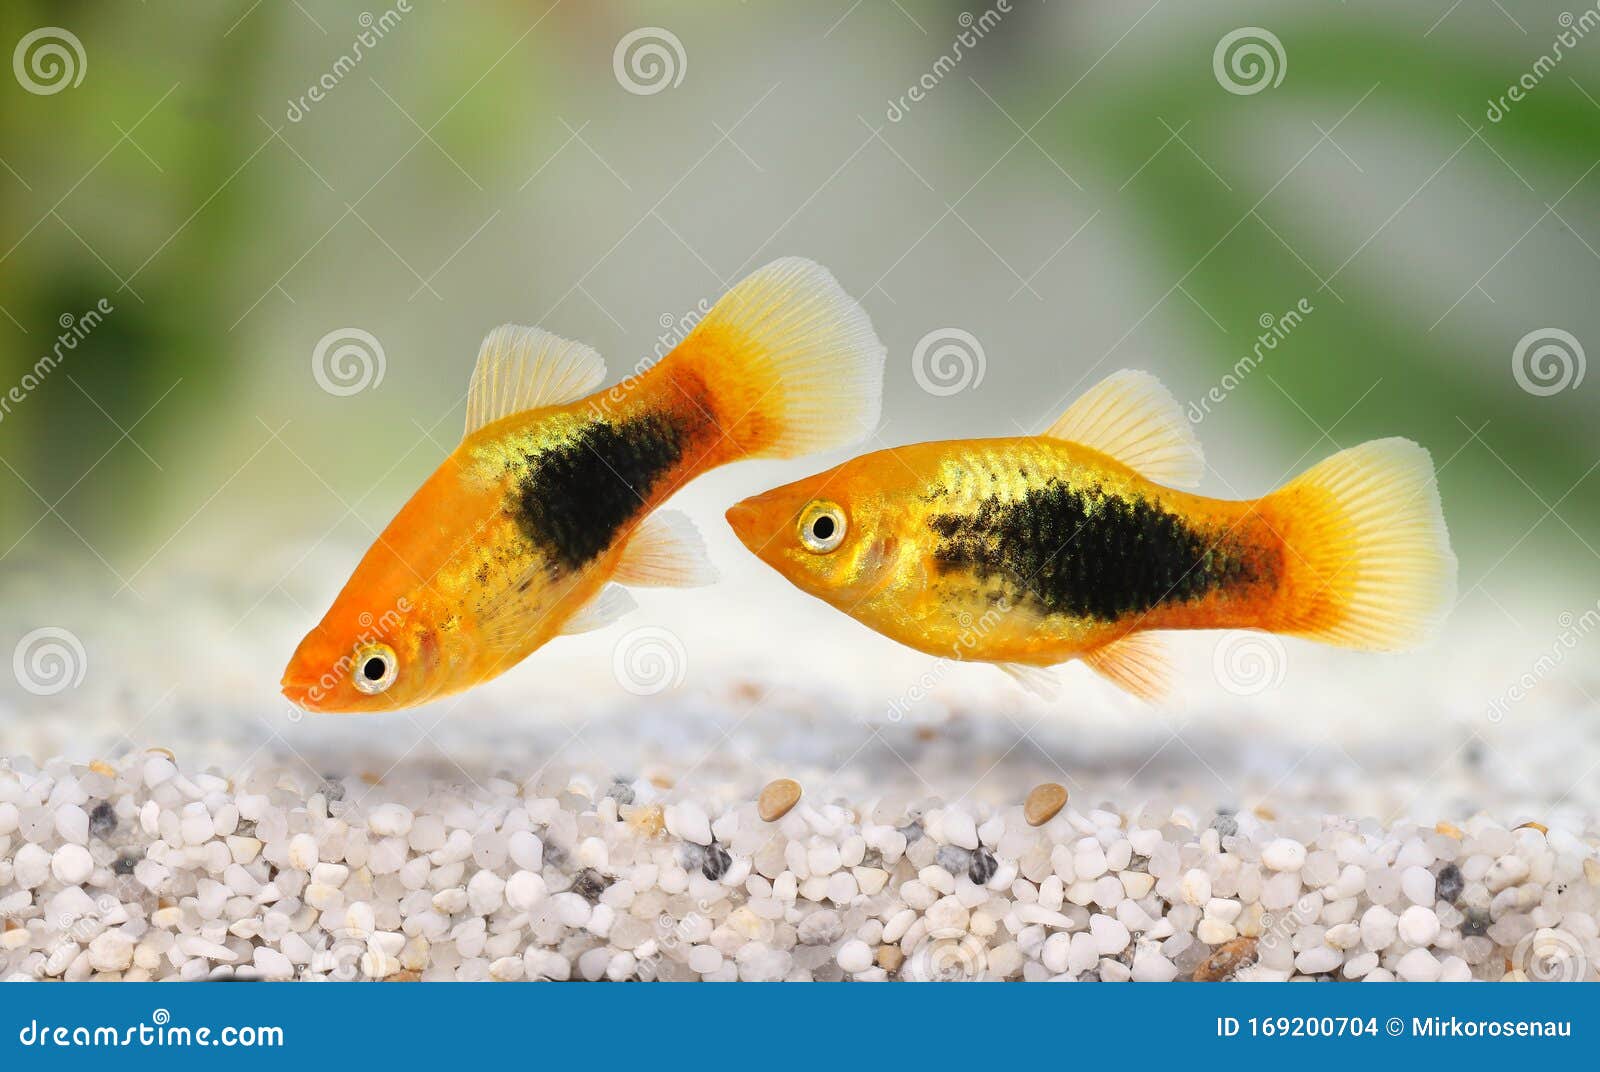 sunburst tuxedo platy male xiphophorus variatus tropical aquarium fish